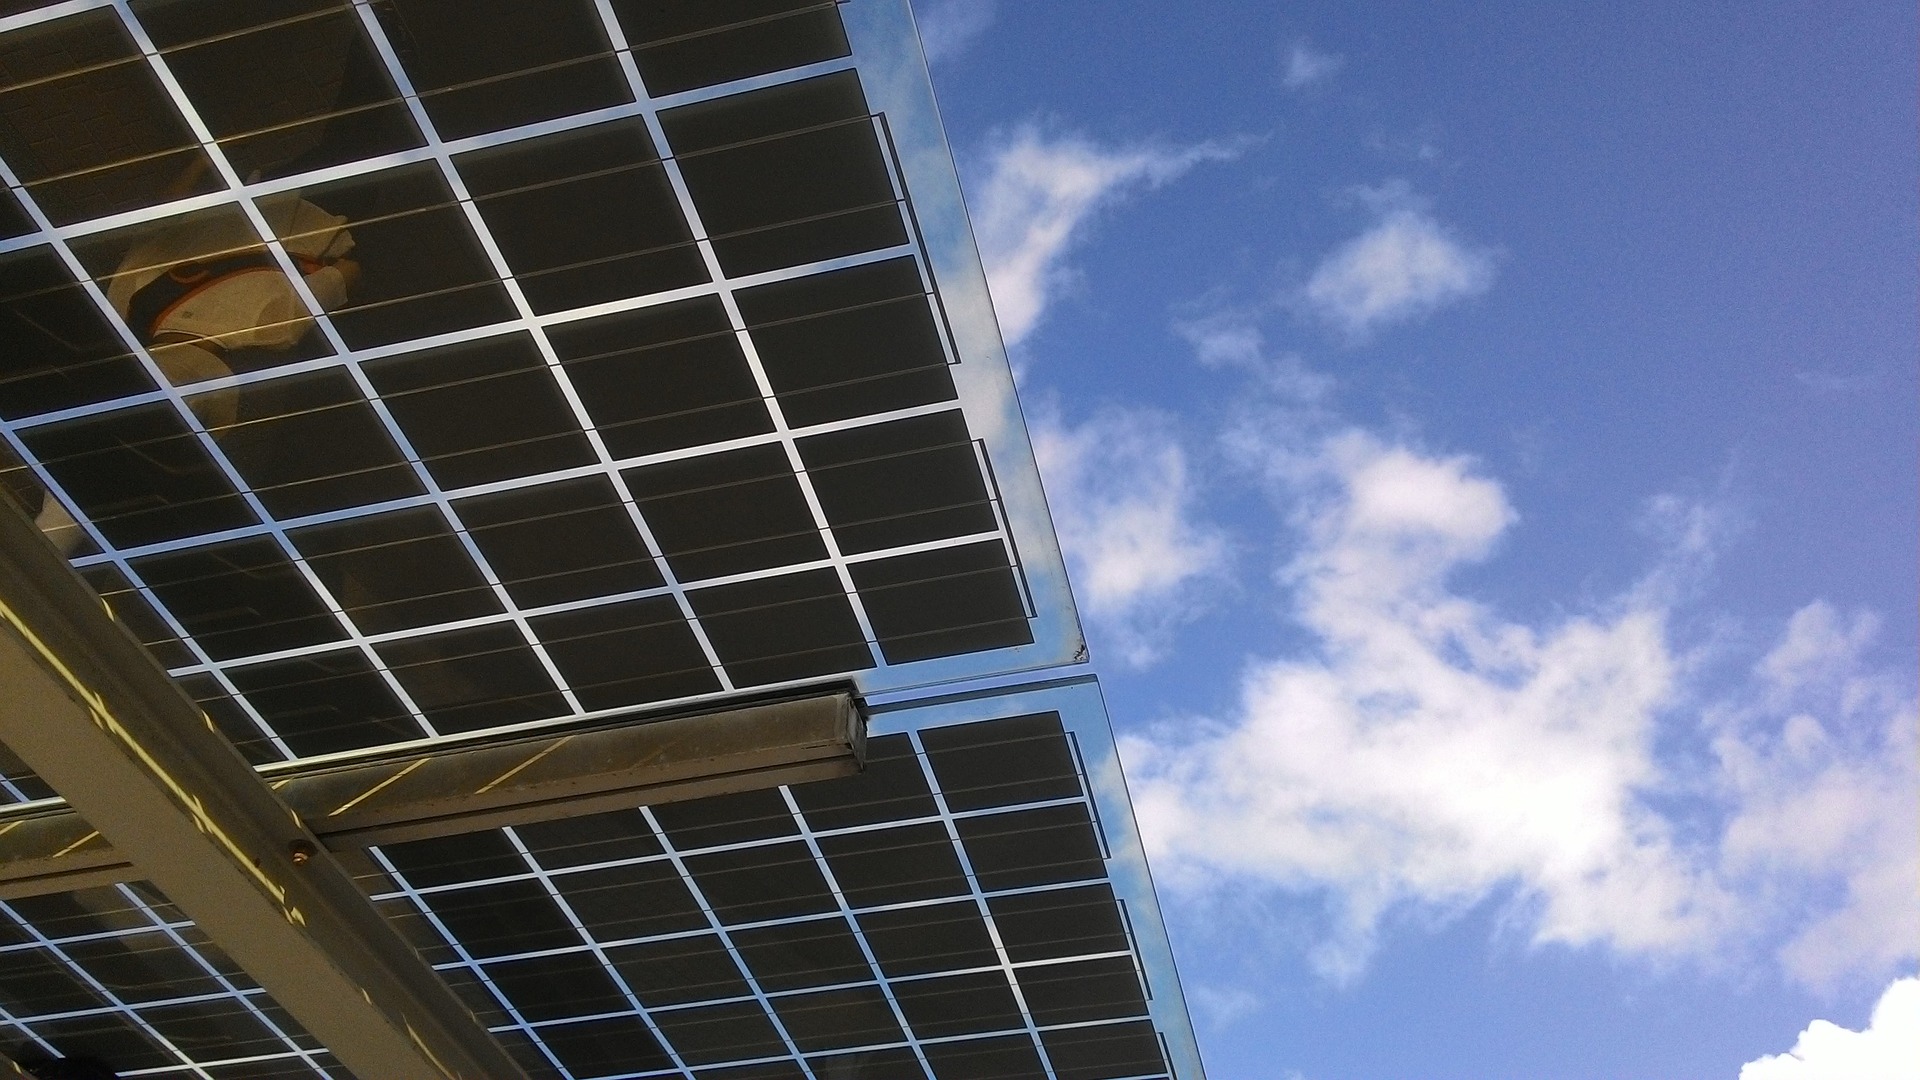 Des panneaux photovoltaïques sur les parkings de Toulouse ? Crédit : Pixabay